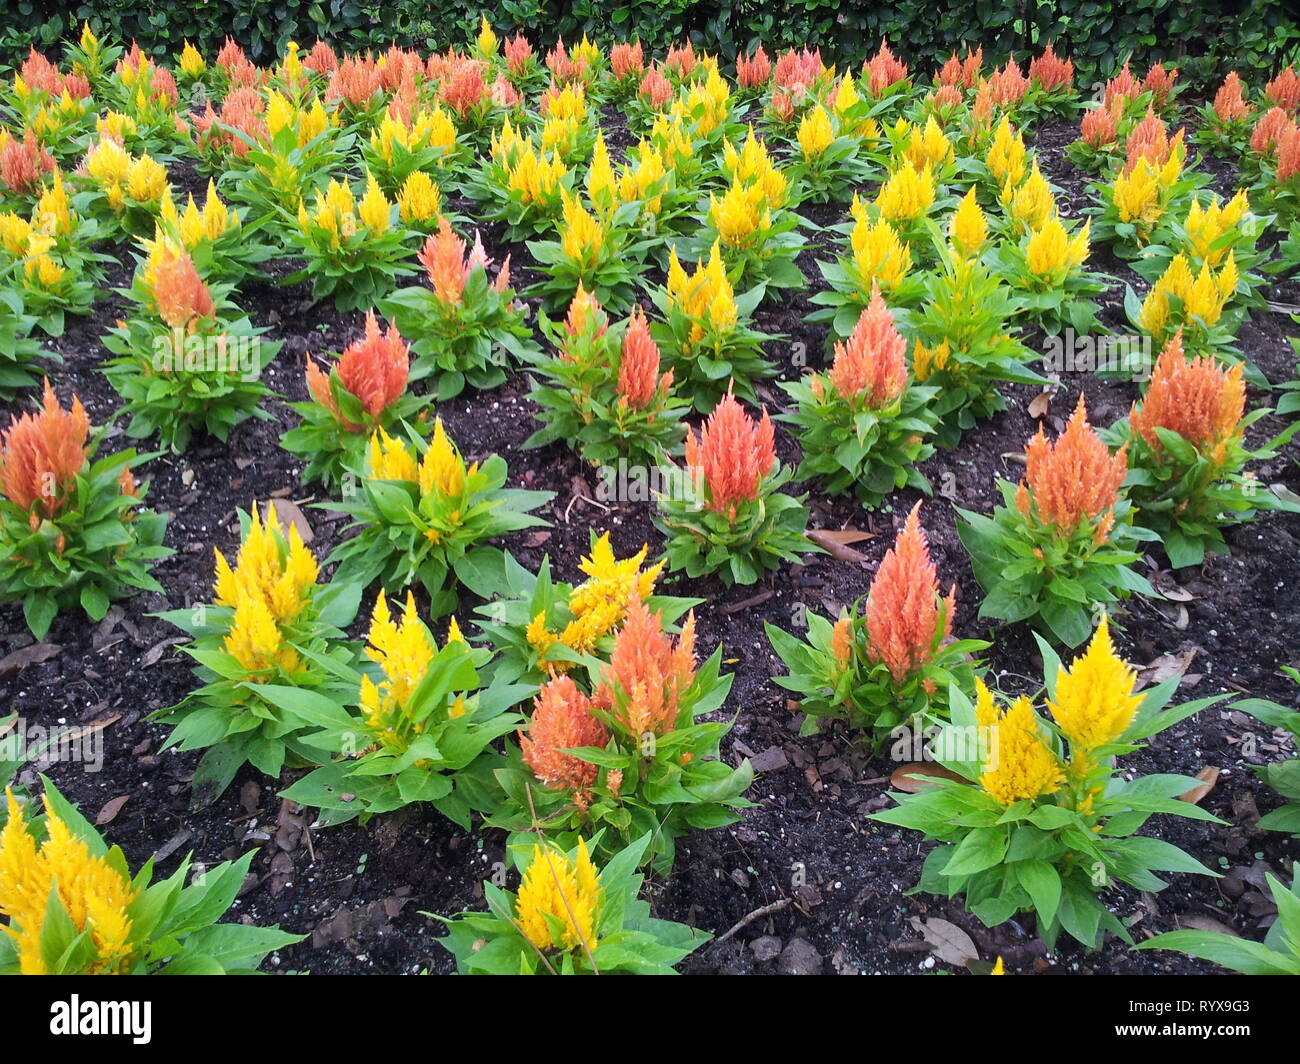 Ein Feld von gelb und orange blühenden Blumen in einer einheitlichen Reihe Farben und Schönheit für eine Landschaft oder den Garten hinaus geeignet Stockfoto